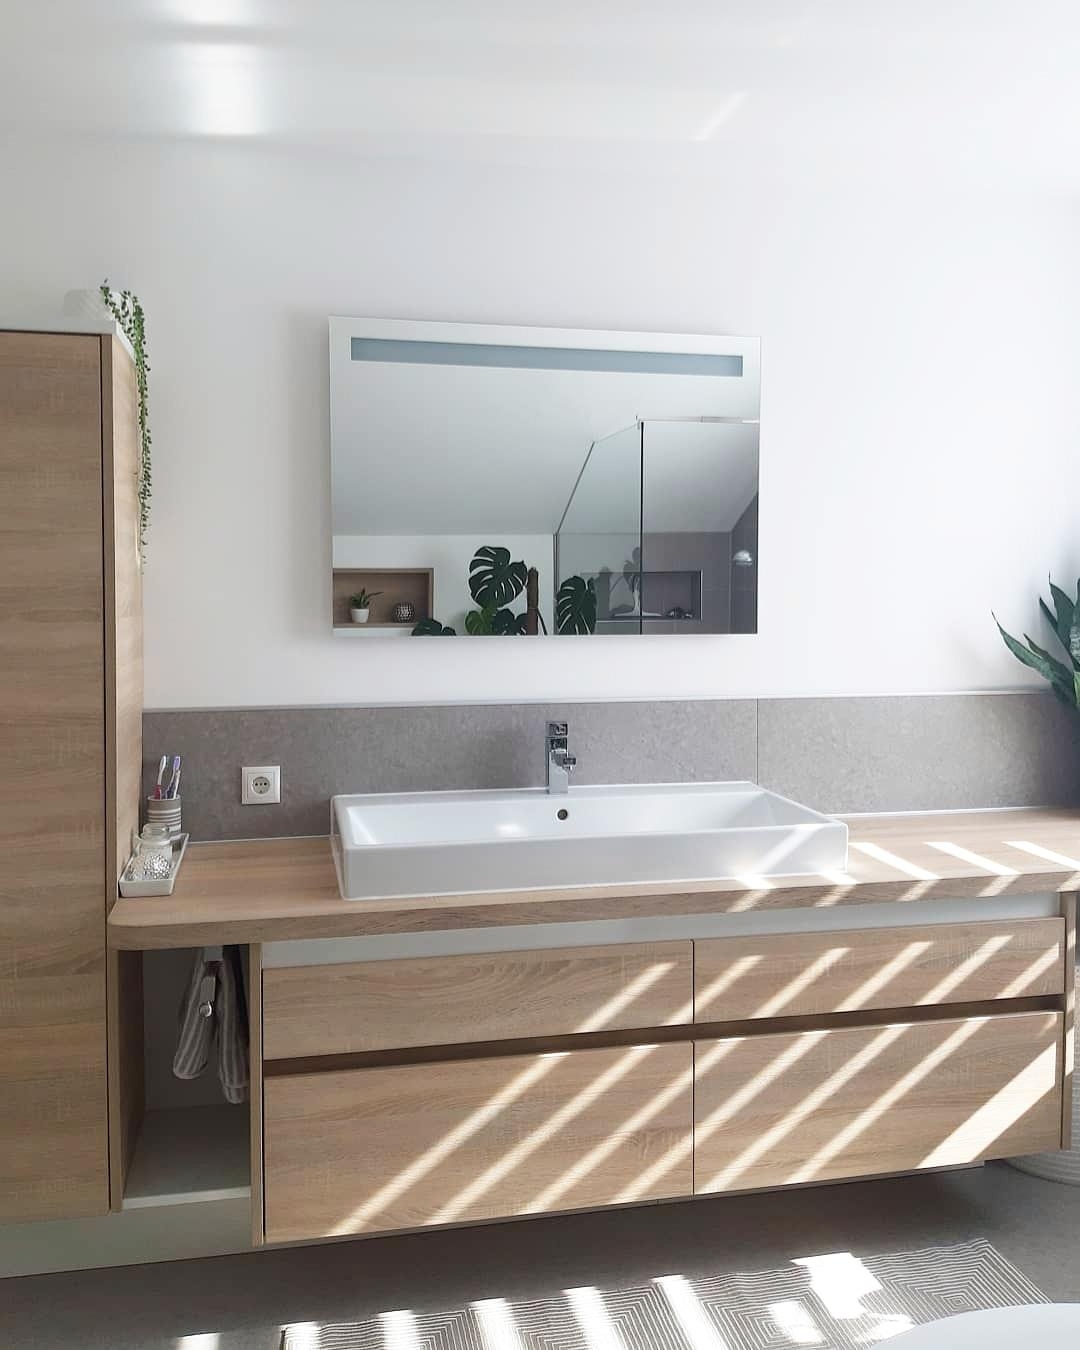 Bathroomview 🌿
#Badezimmer #waschtisch #holz #betonoptik #skandi #einrichten #spiegel #badezimmerideen #dachgeschoss #b